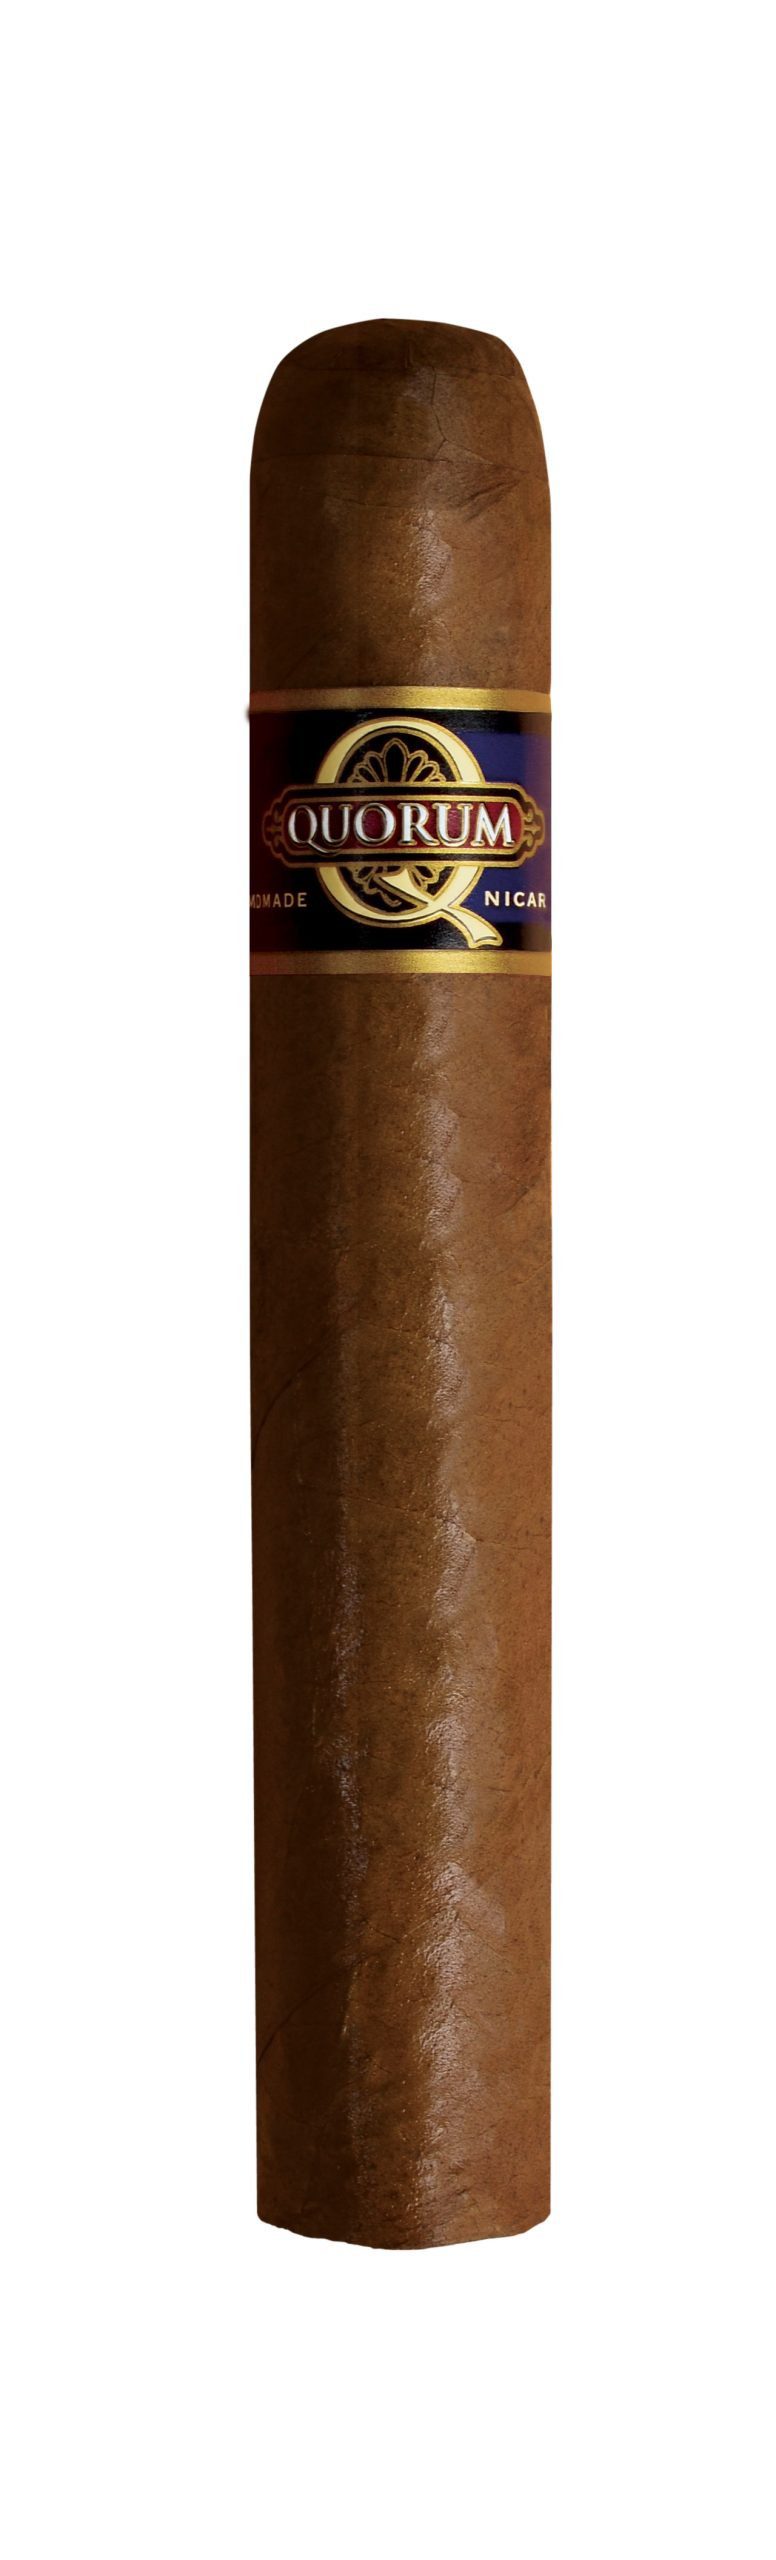 quorum gordo single cigar